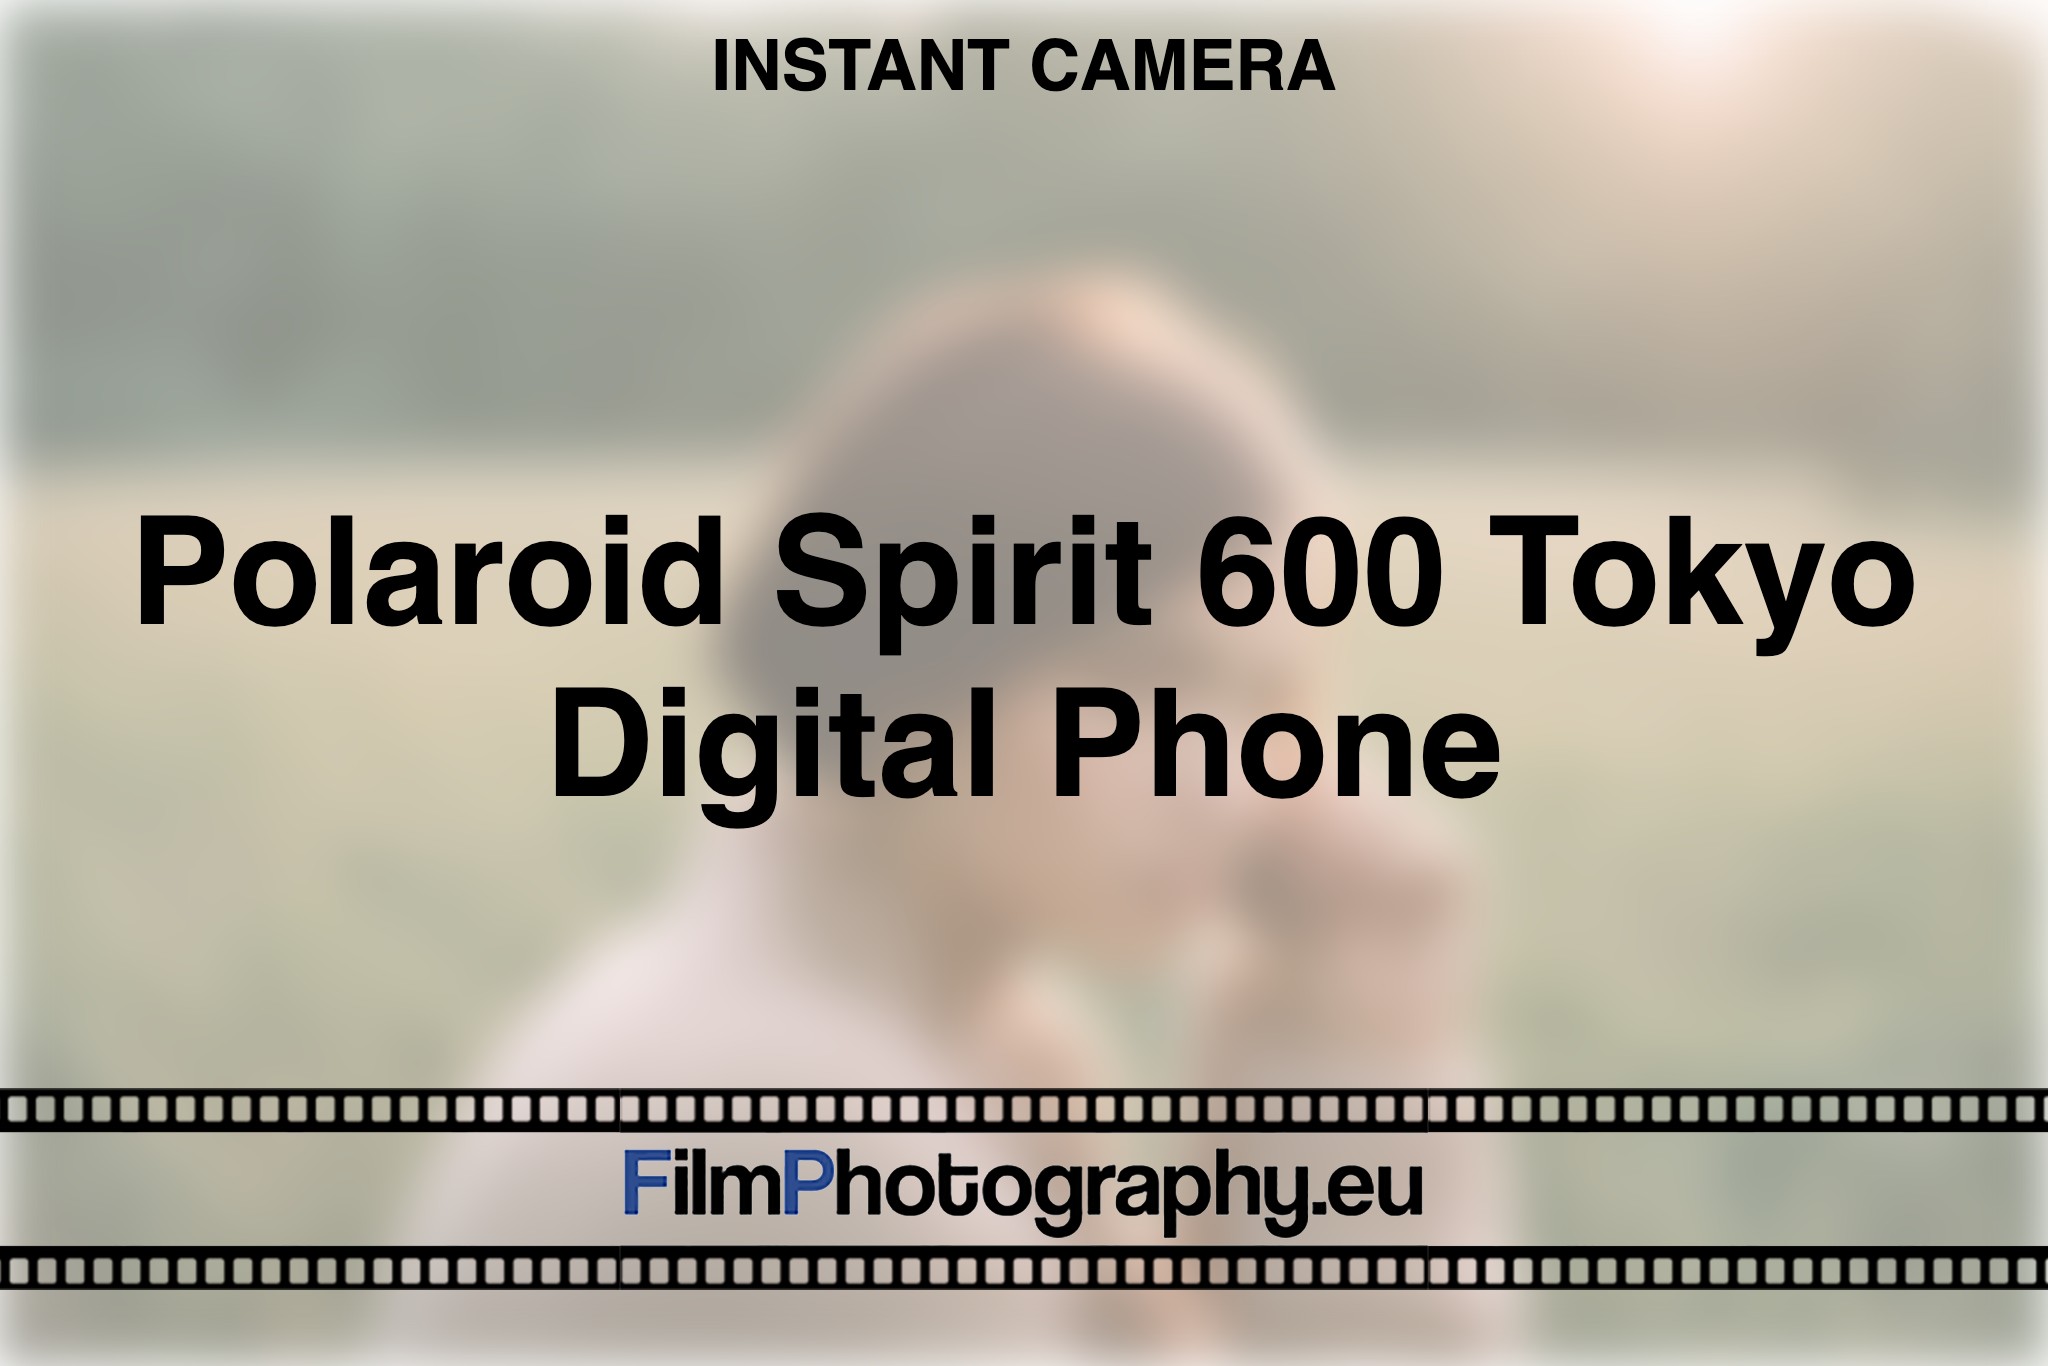 polaroid-spirit-600-tokyo-digital-phone-instant-camera-bnv